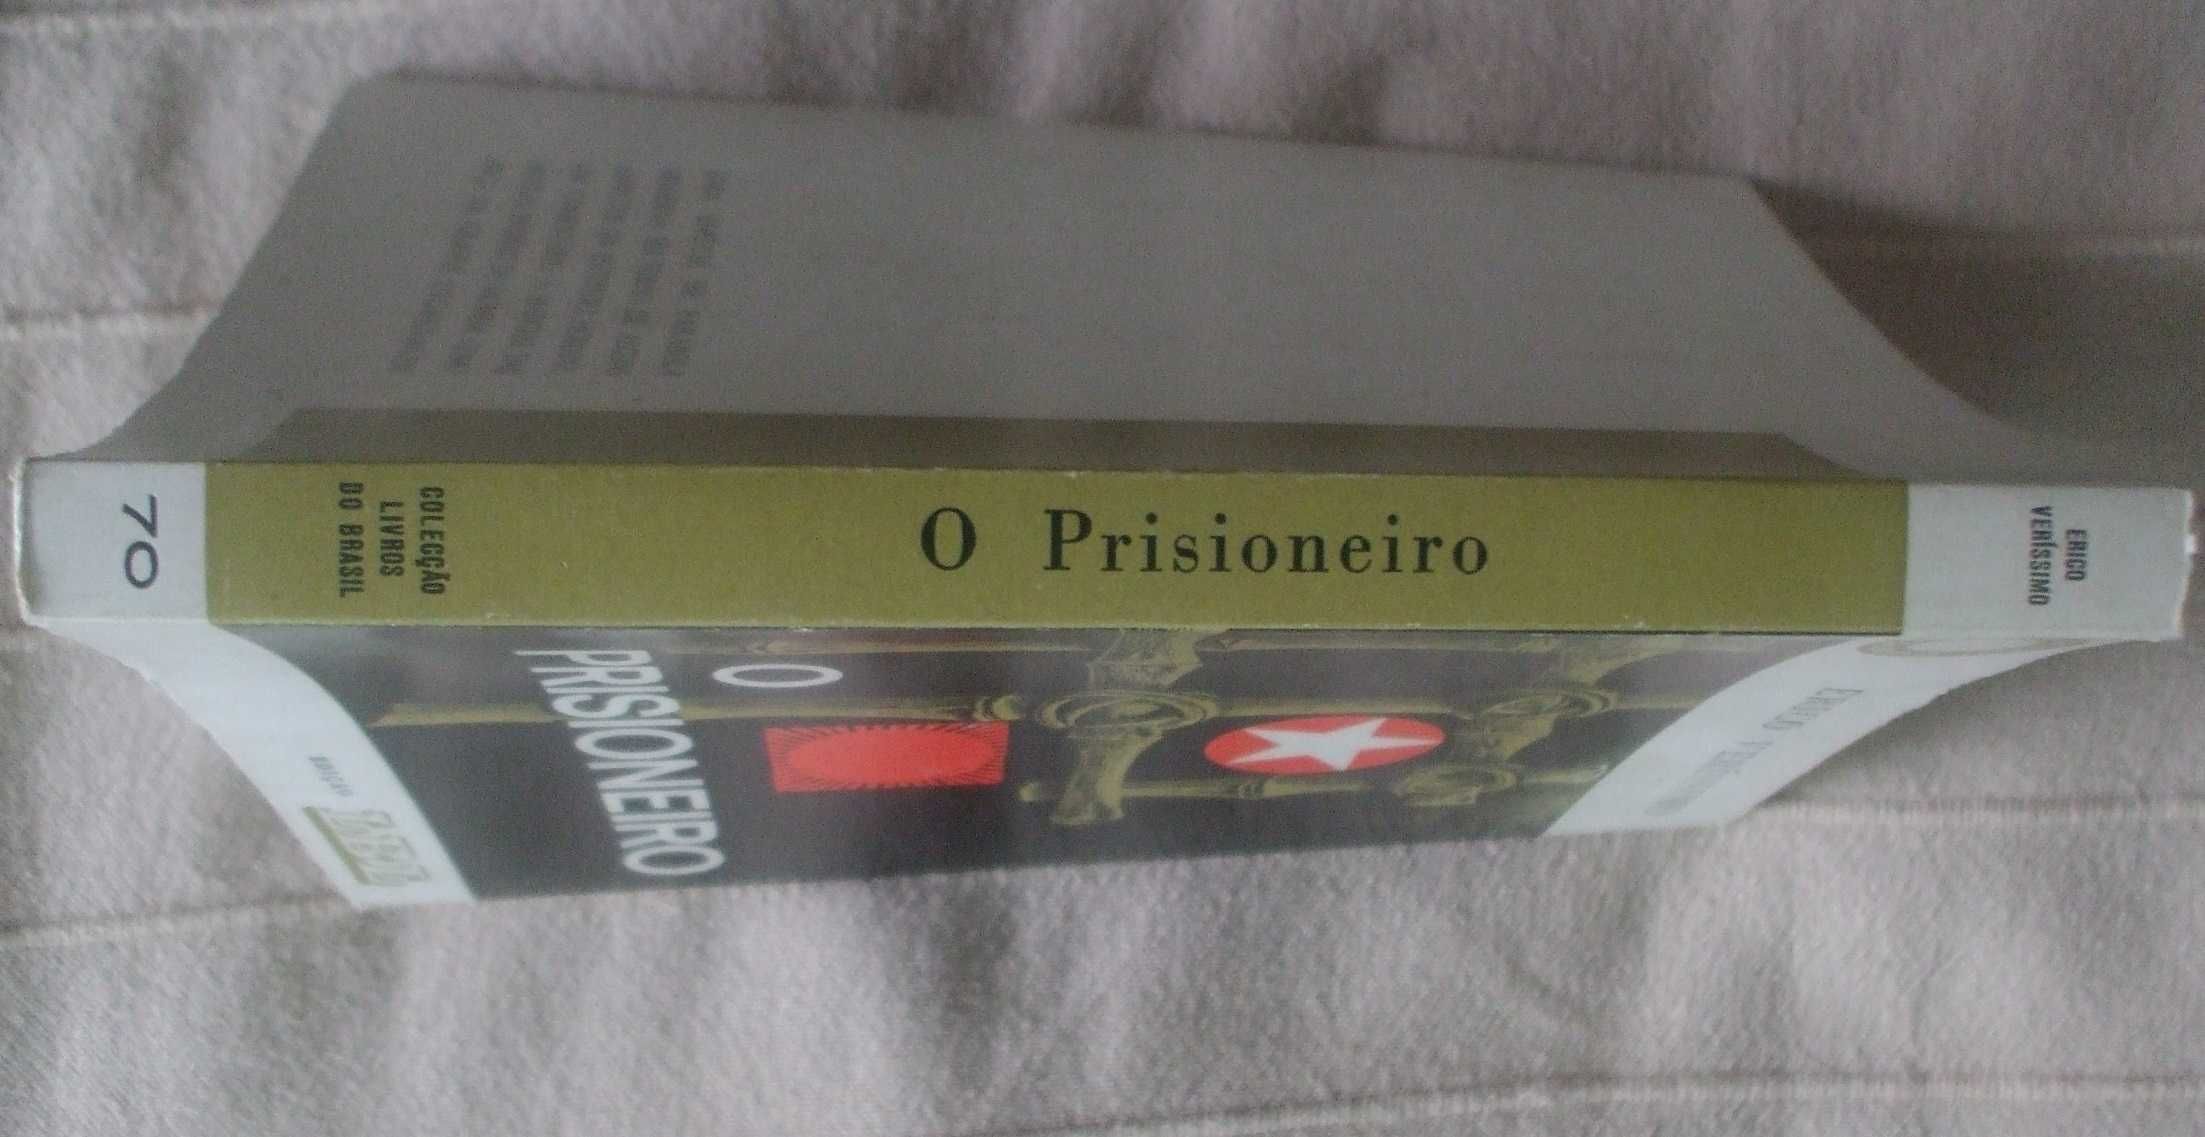 O prisioneiro, Erico Veríssimo